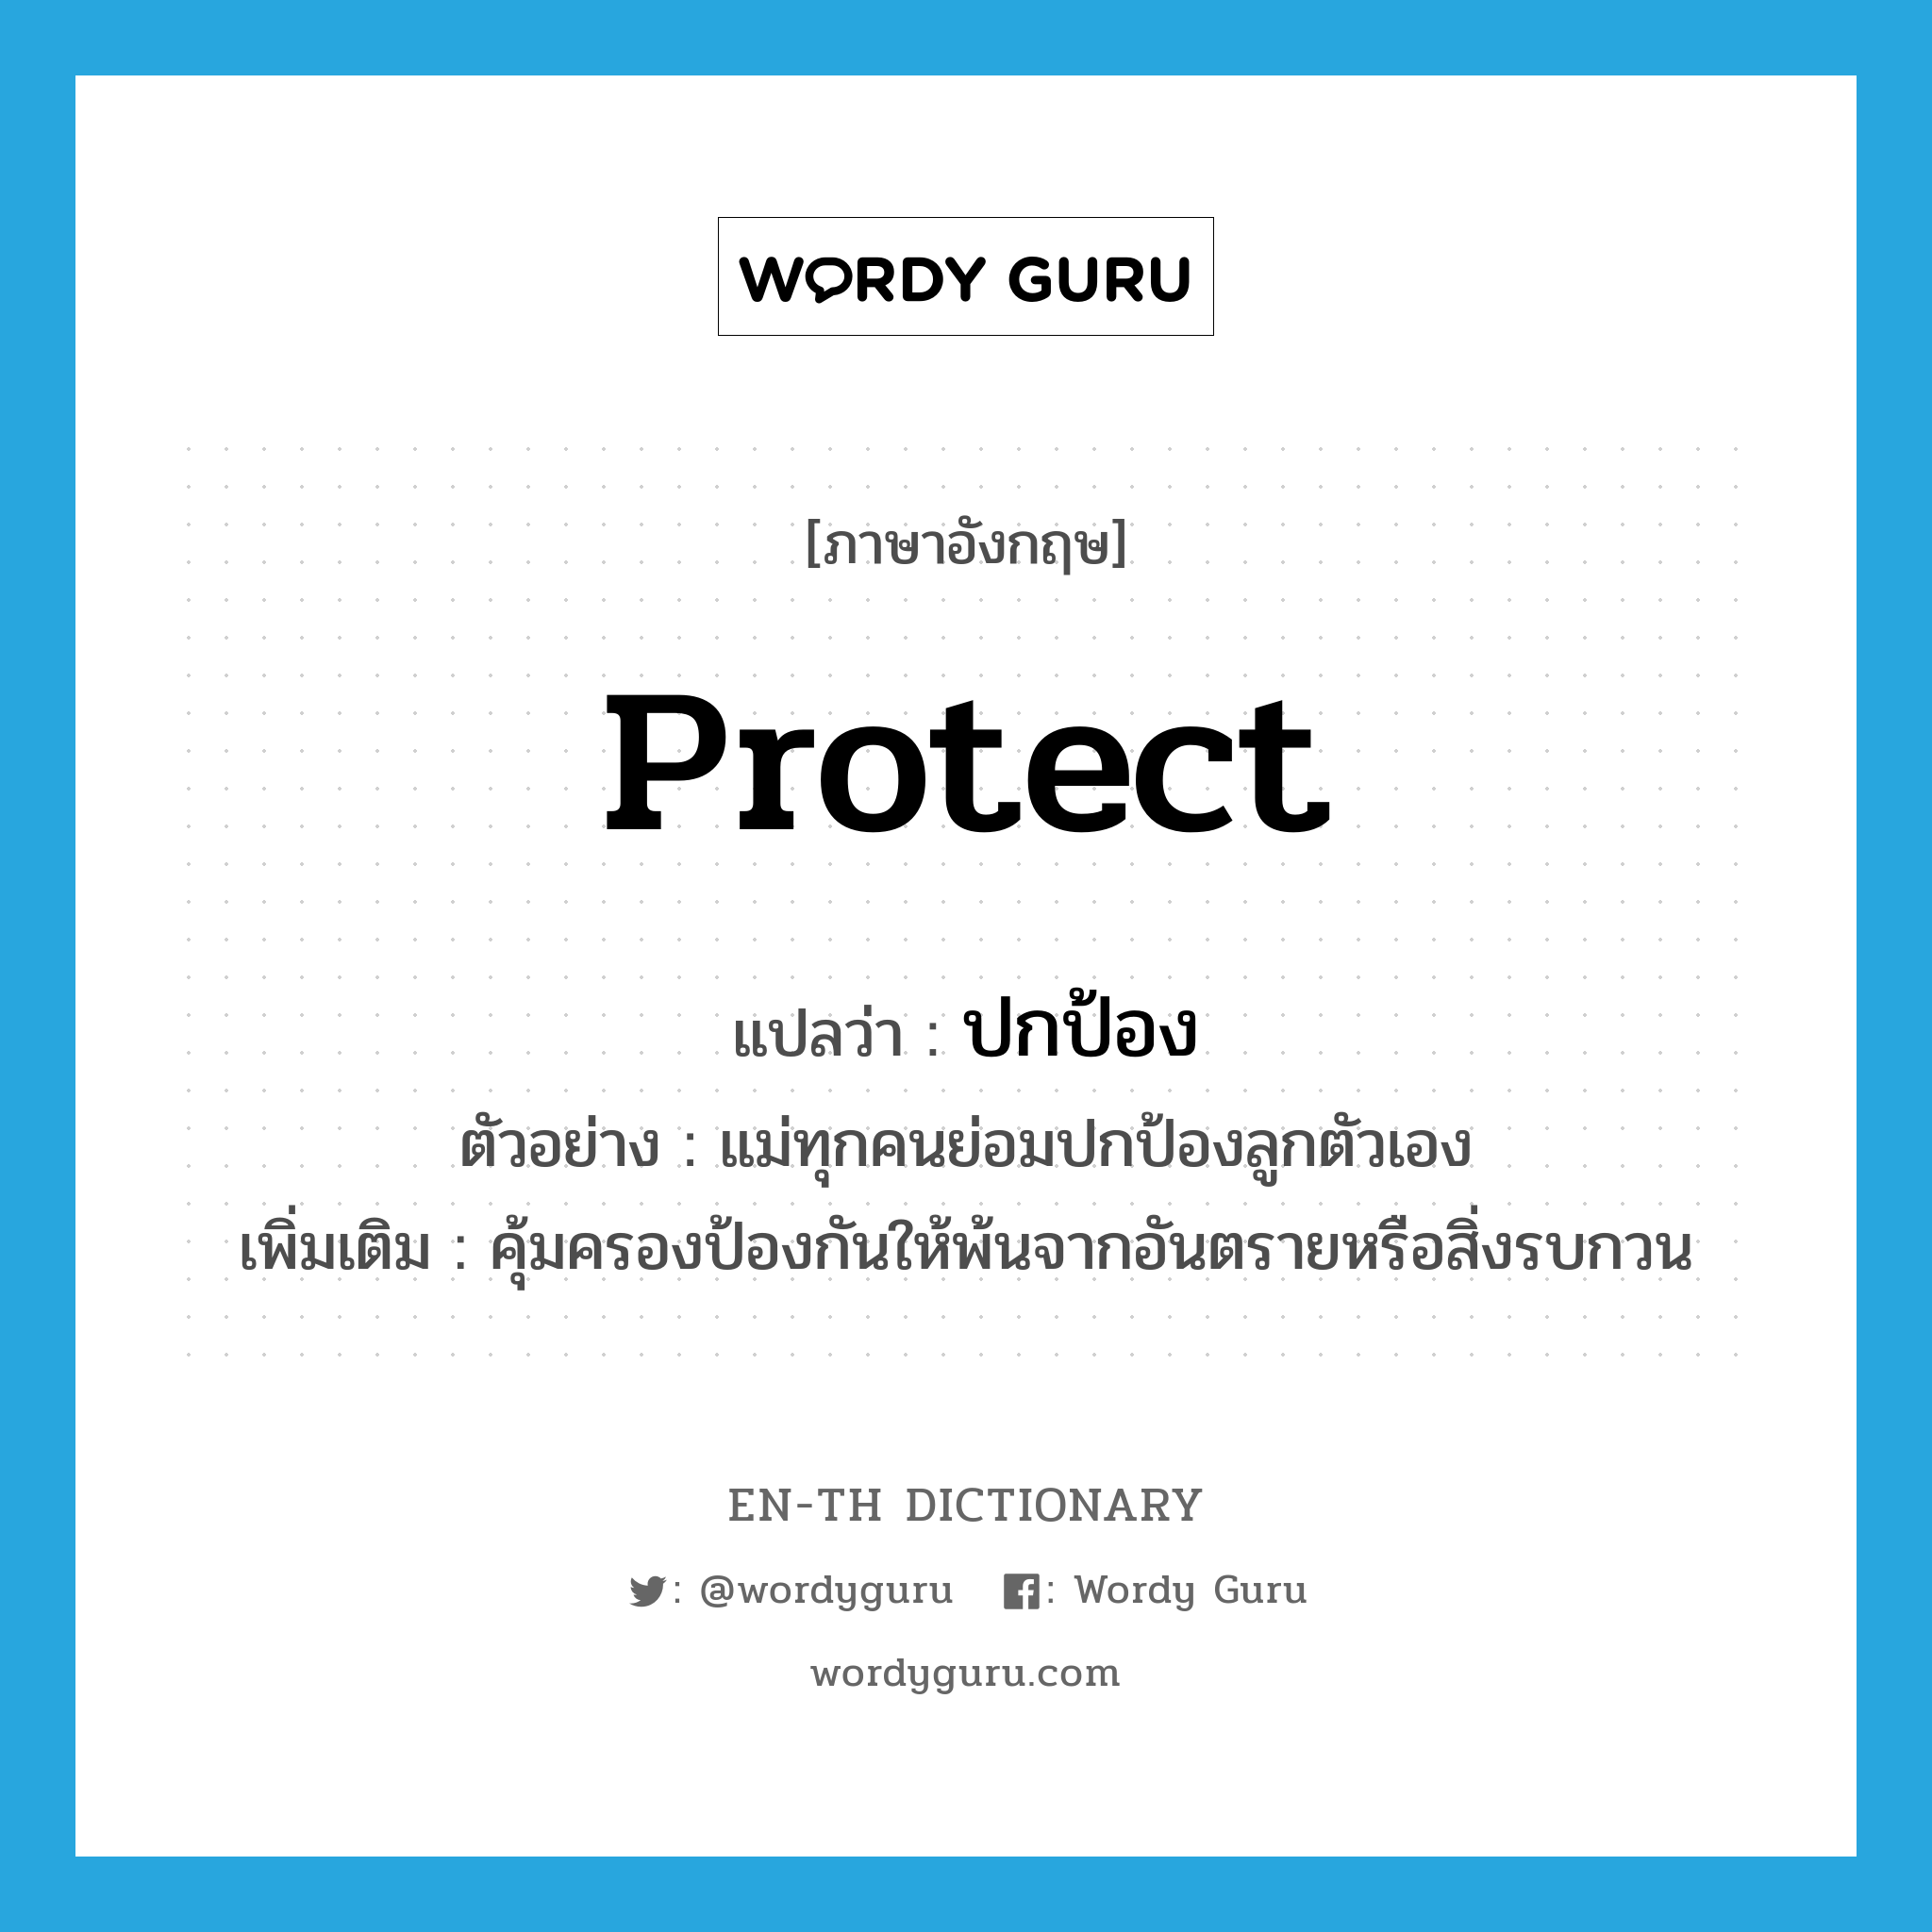 protect แปลว่า?, คำศัพท์ภาษาอังกฤษ protect แปลว่า ปกป้อง ประเภท V ตัวอย่าง แม่ทุกคนย่อมปกป้องลูกตัวเอง เพิ่มเติม คุ้มครองป้องกันให้พ้นจากอันตรายหรือสิ่งรบกวน หมวด V